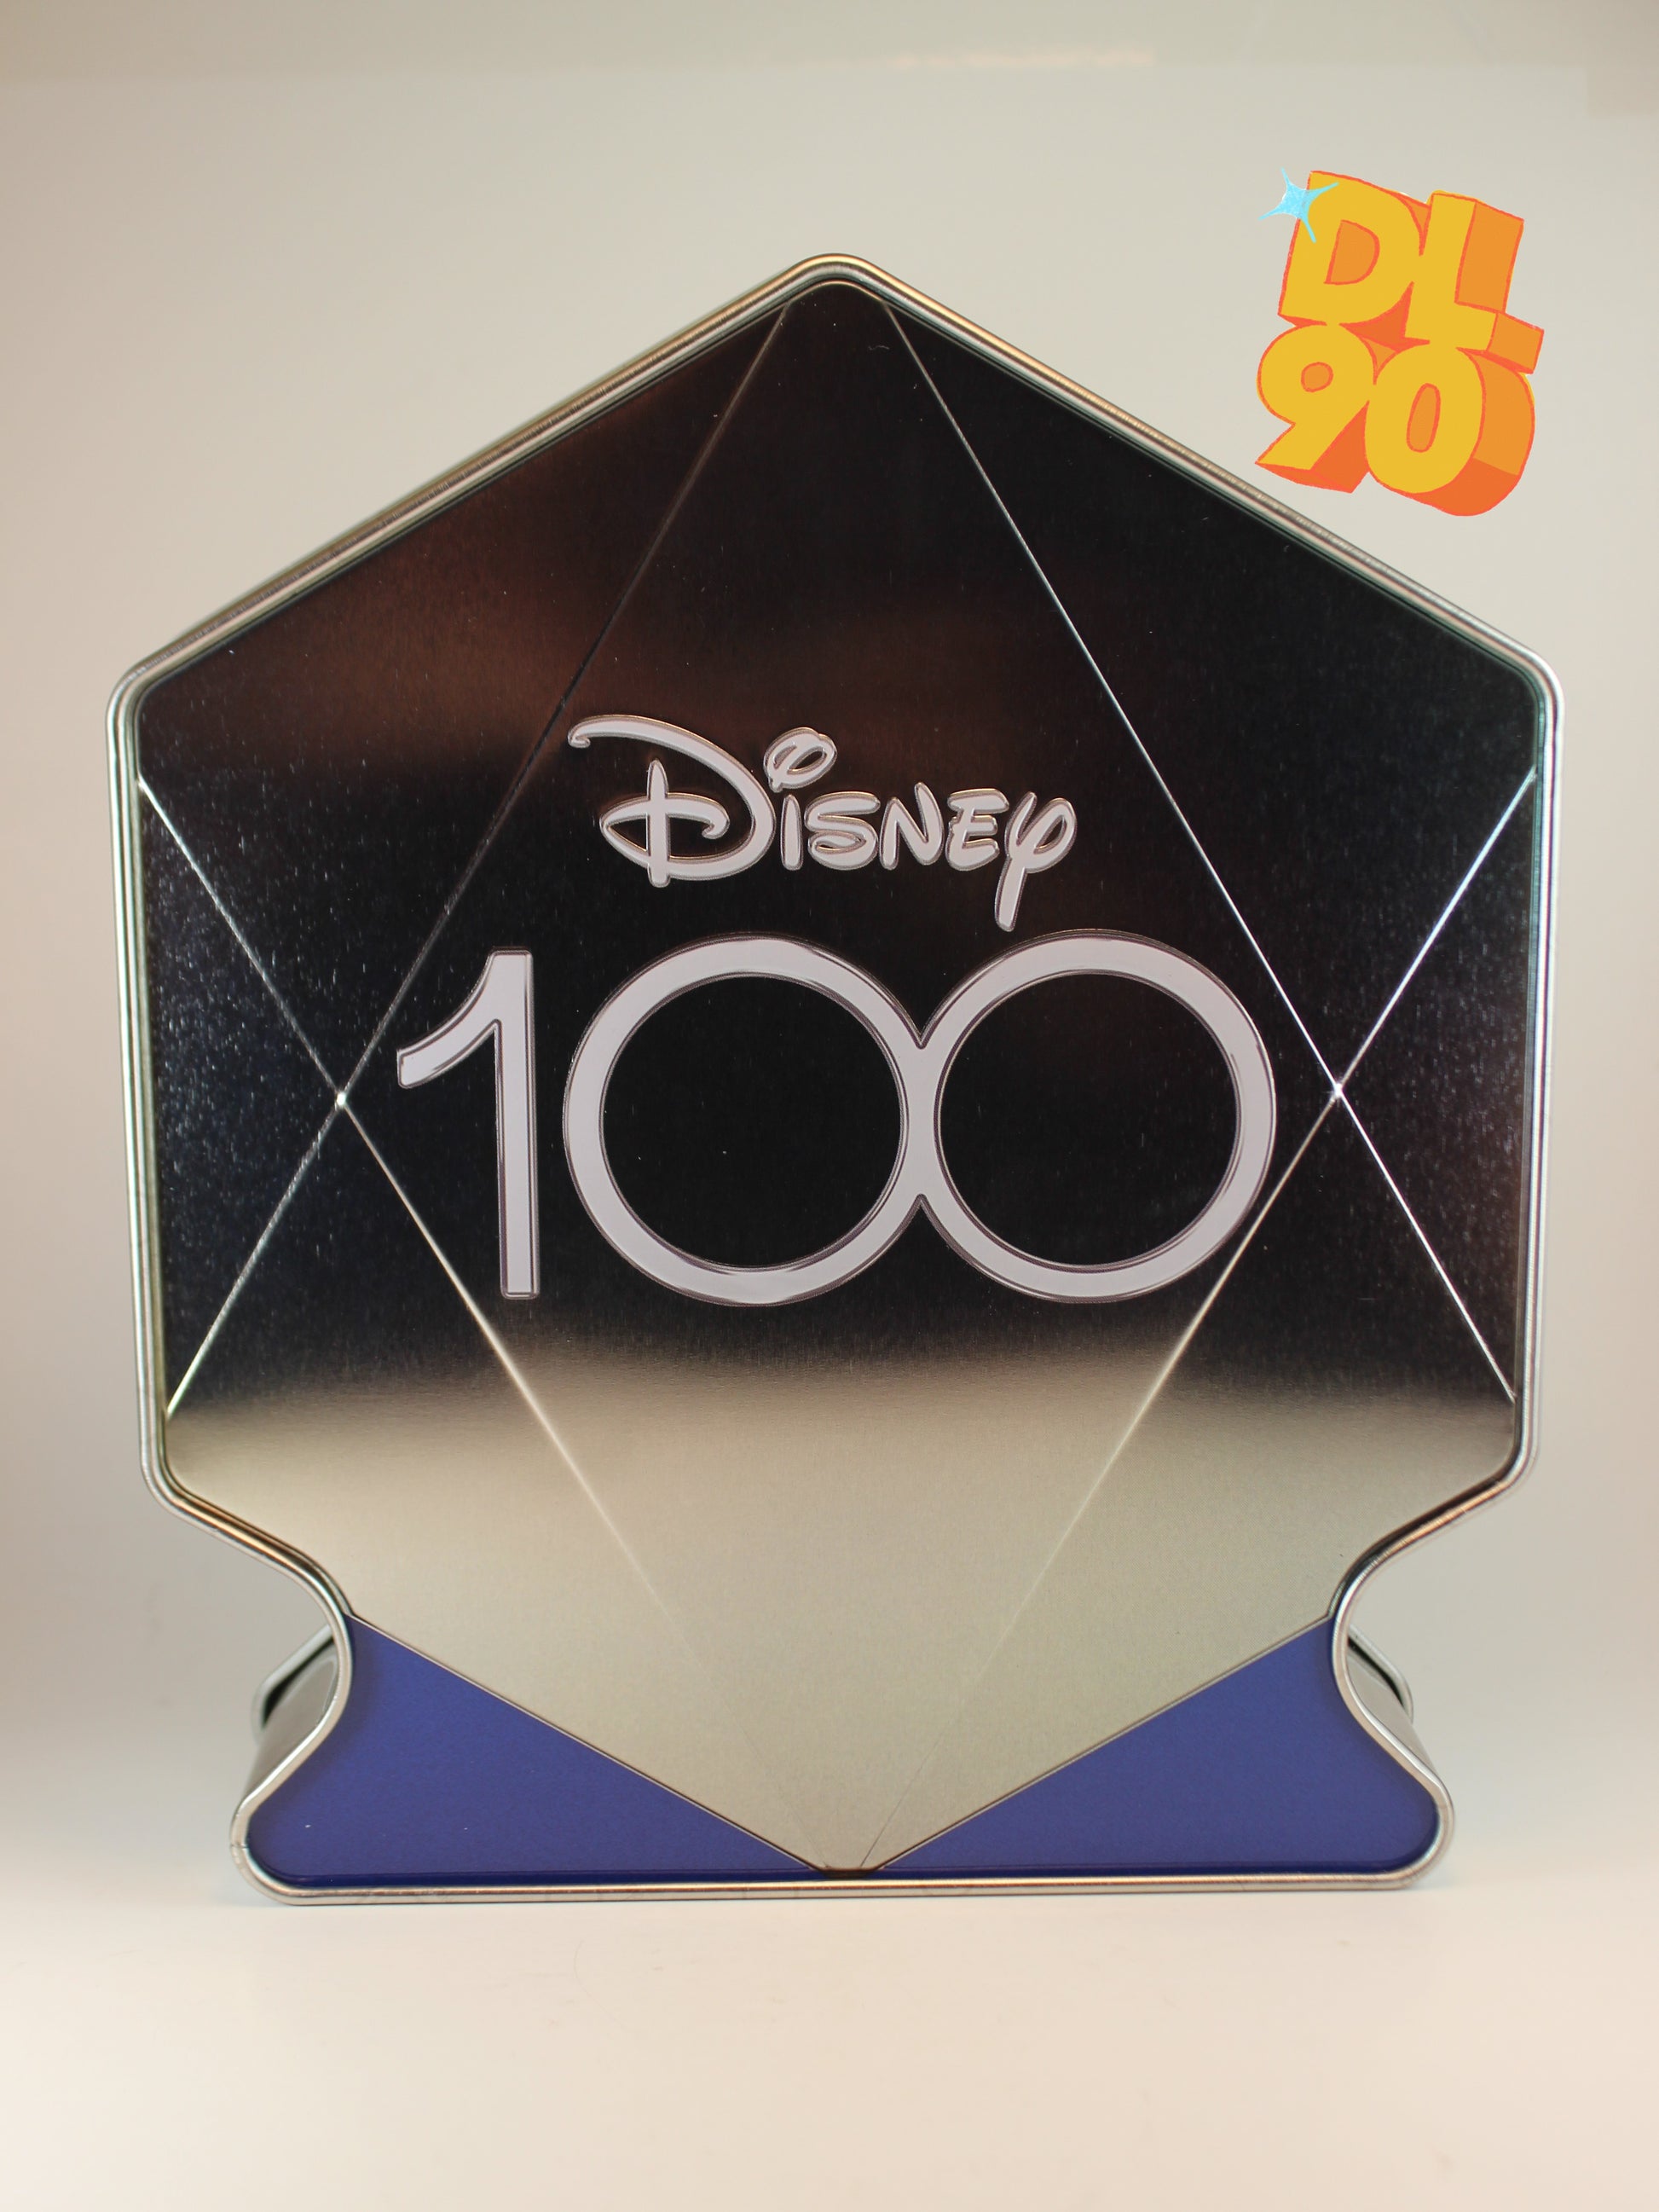 Disney 100 PEZ Gift Tin Gift, Disney 100